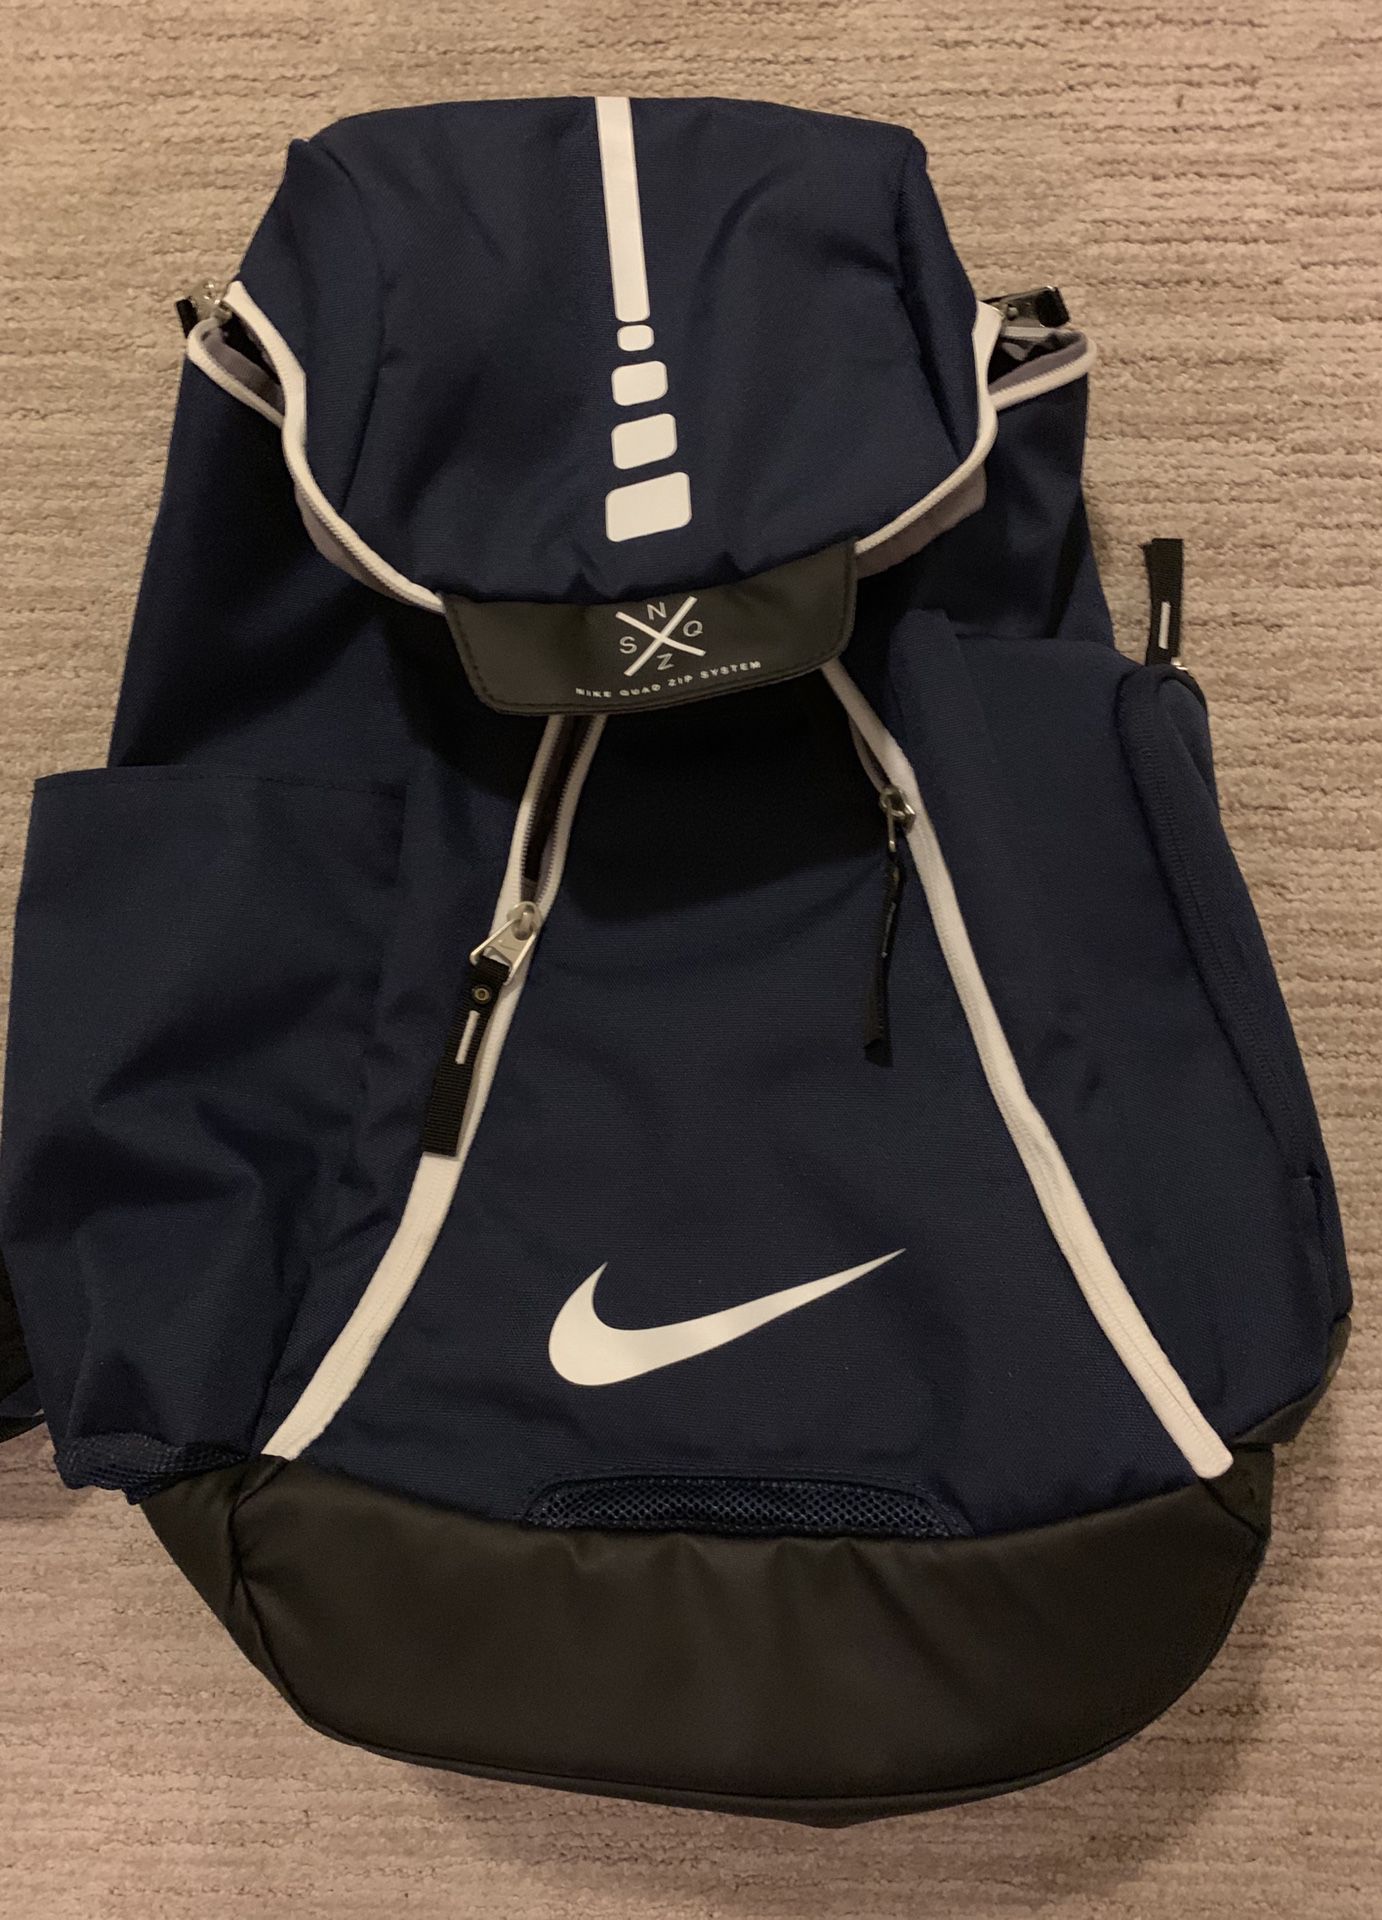 New Nike backpack